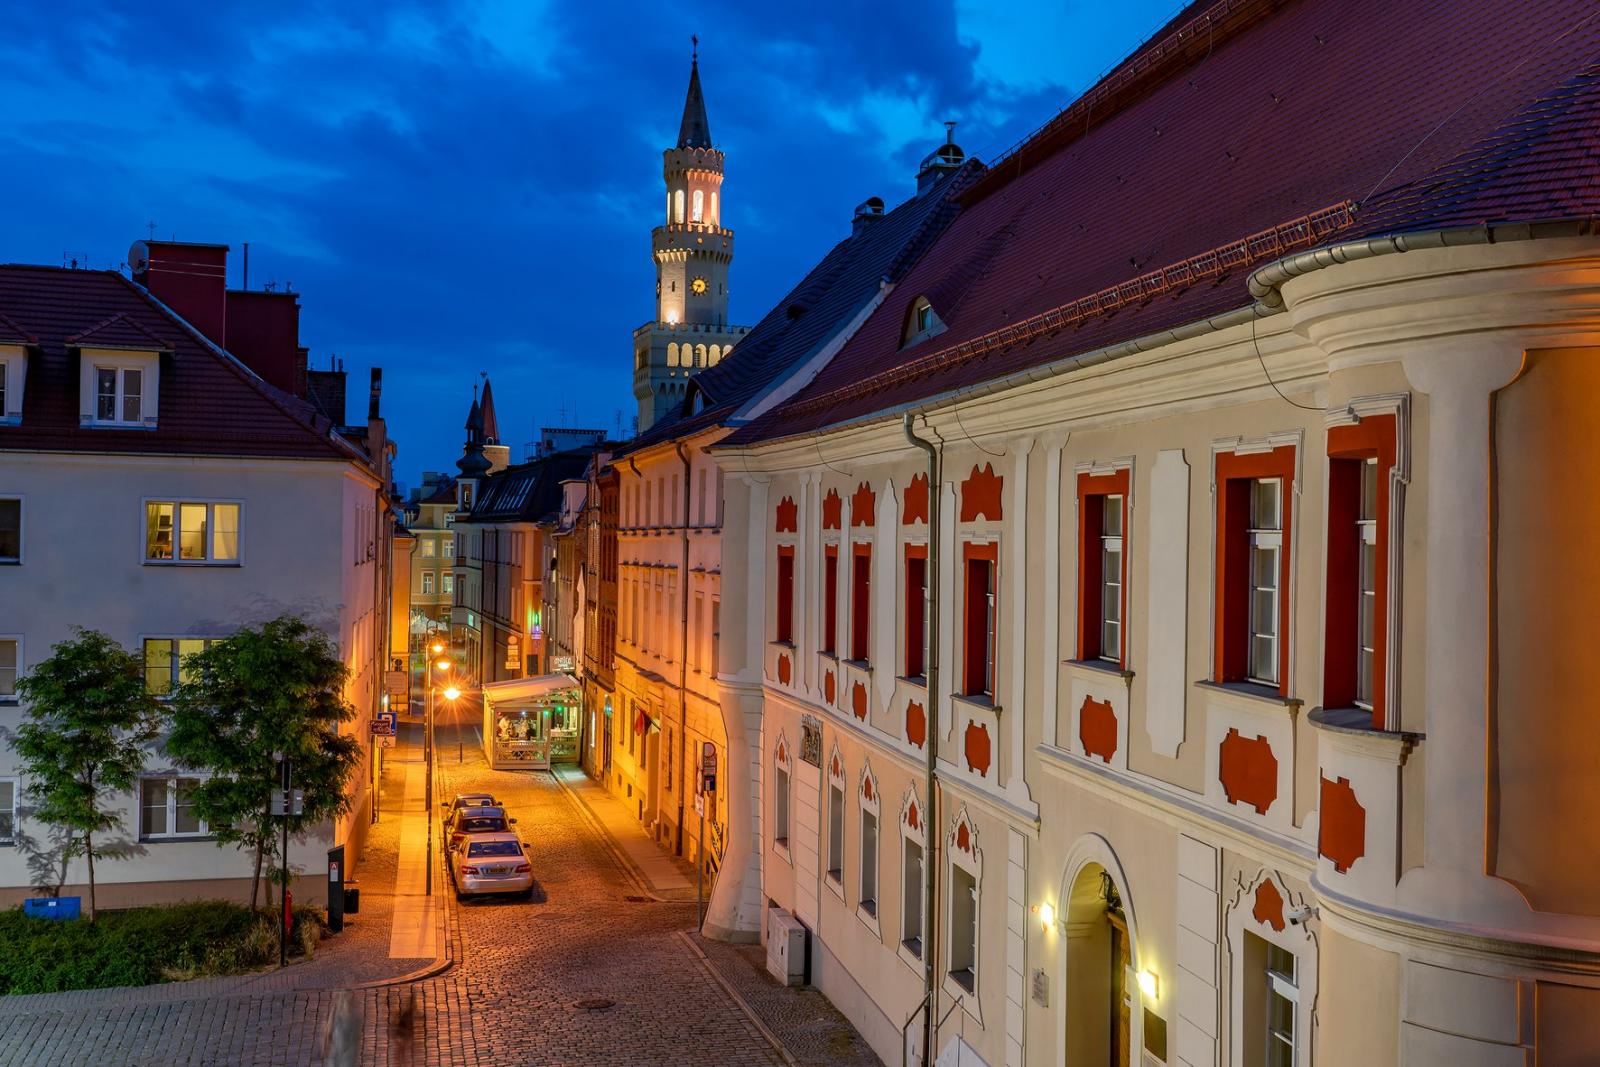 Obecny widok na ulicę Świętego Wojciecha, fot. J. Małkowski